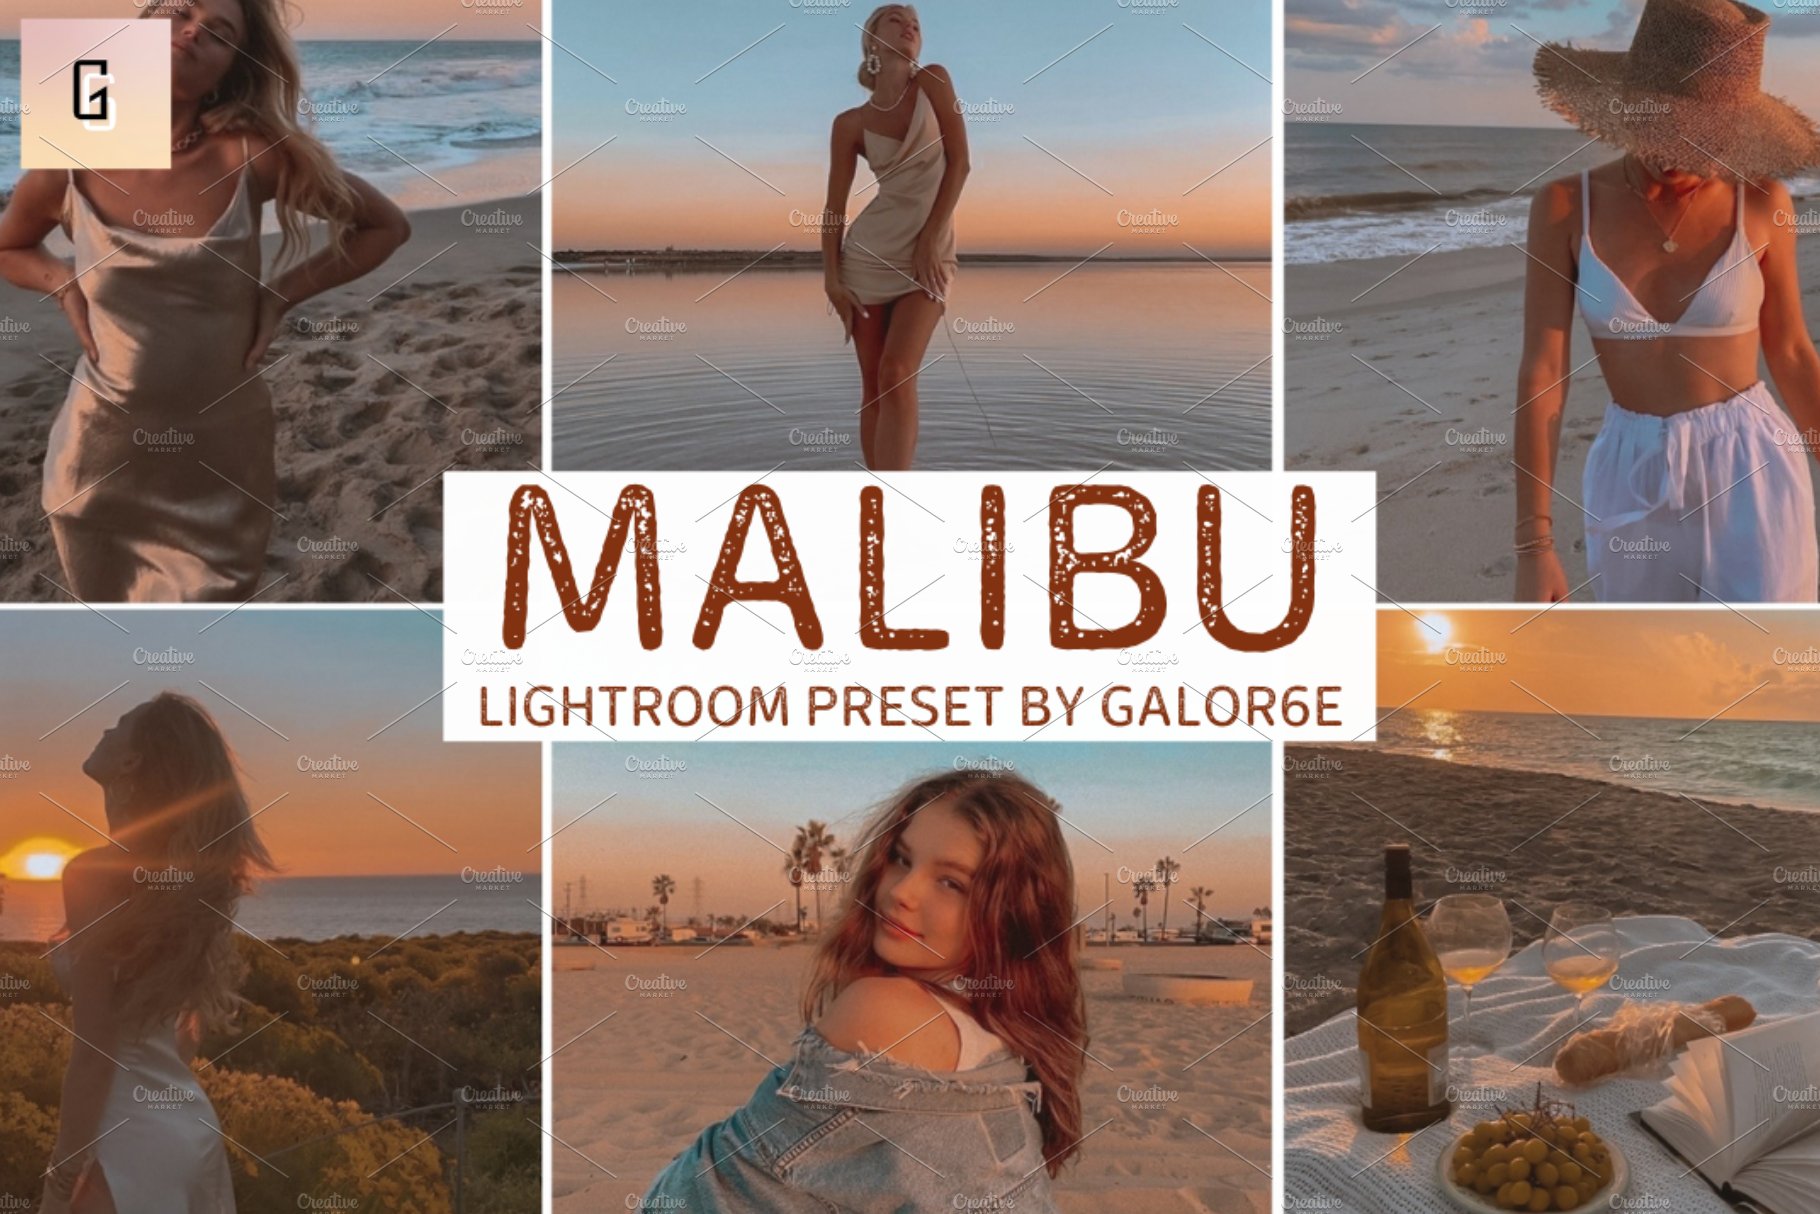 Lightroom Preset MALIBU by GALOR6Ecover image.